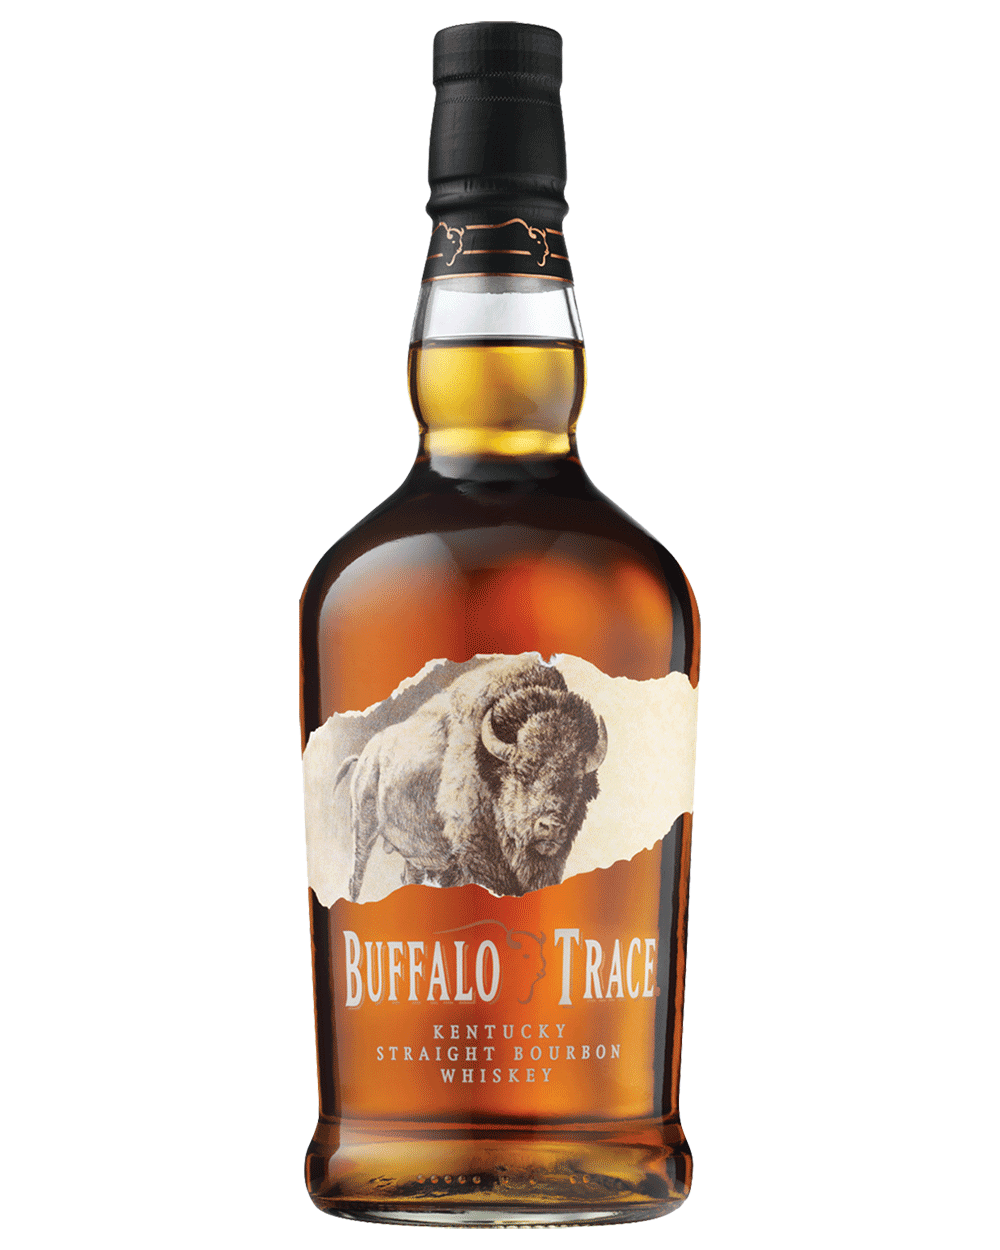 The Kentucky Buffalo Whiskey Bourbon – Straight Barrel Trace